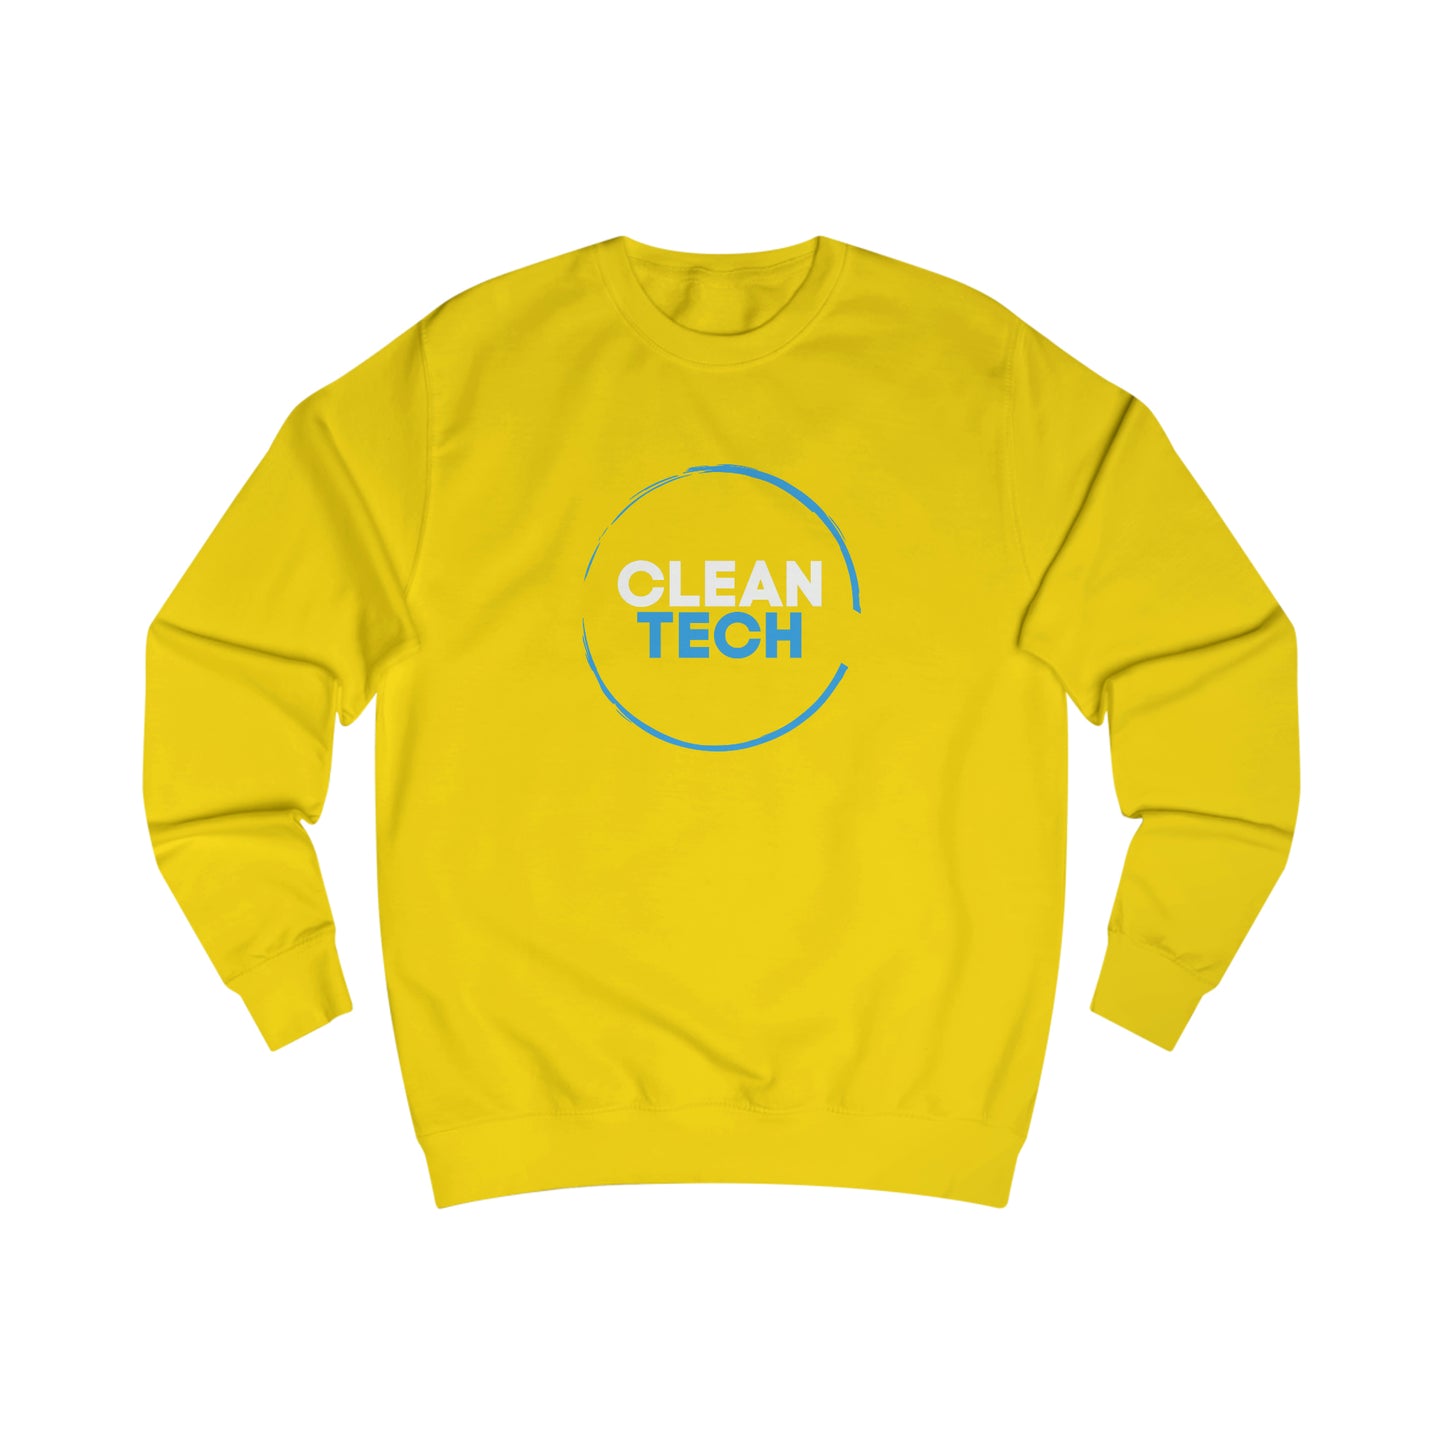 CLEANTECH - Men's Sweatshirt